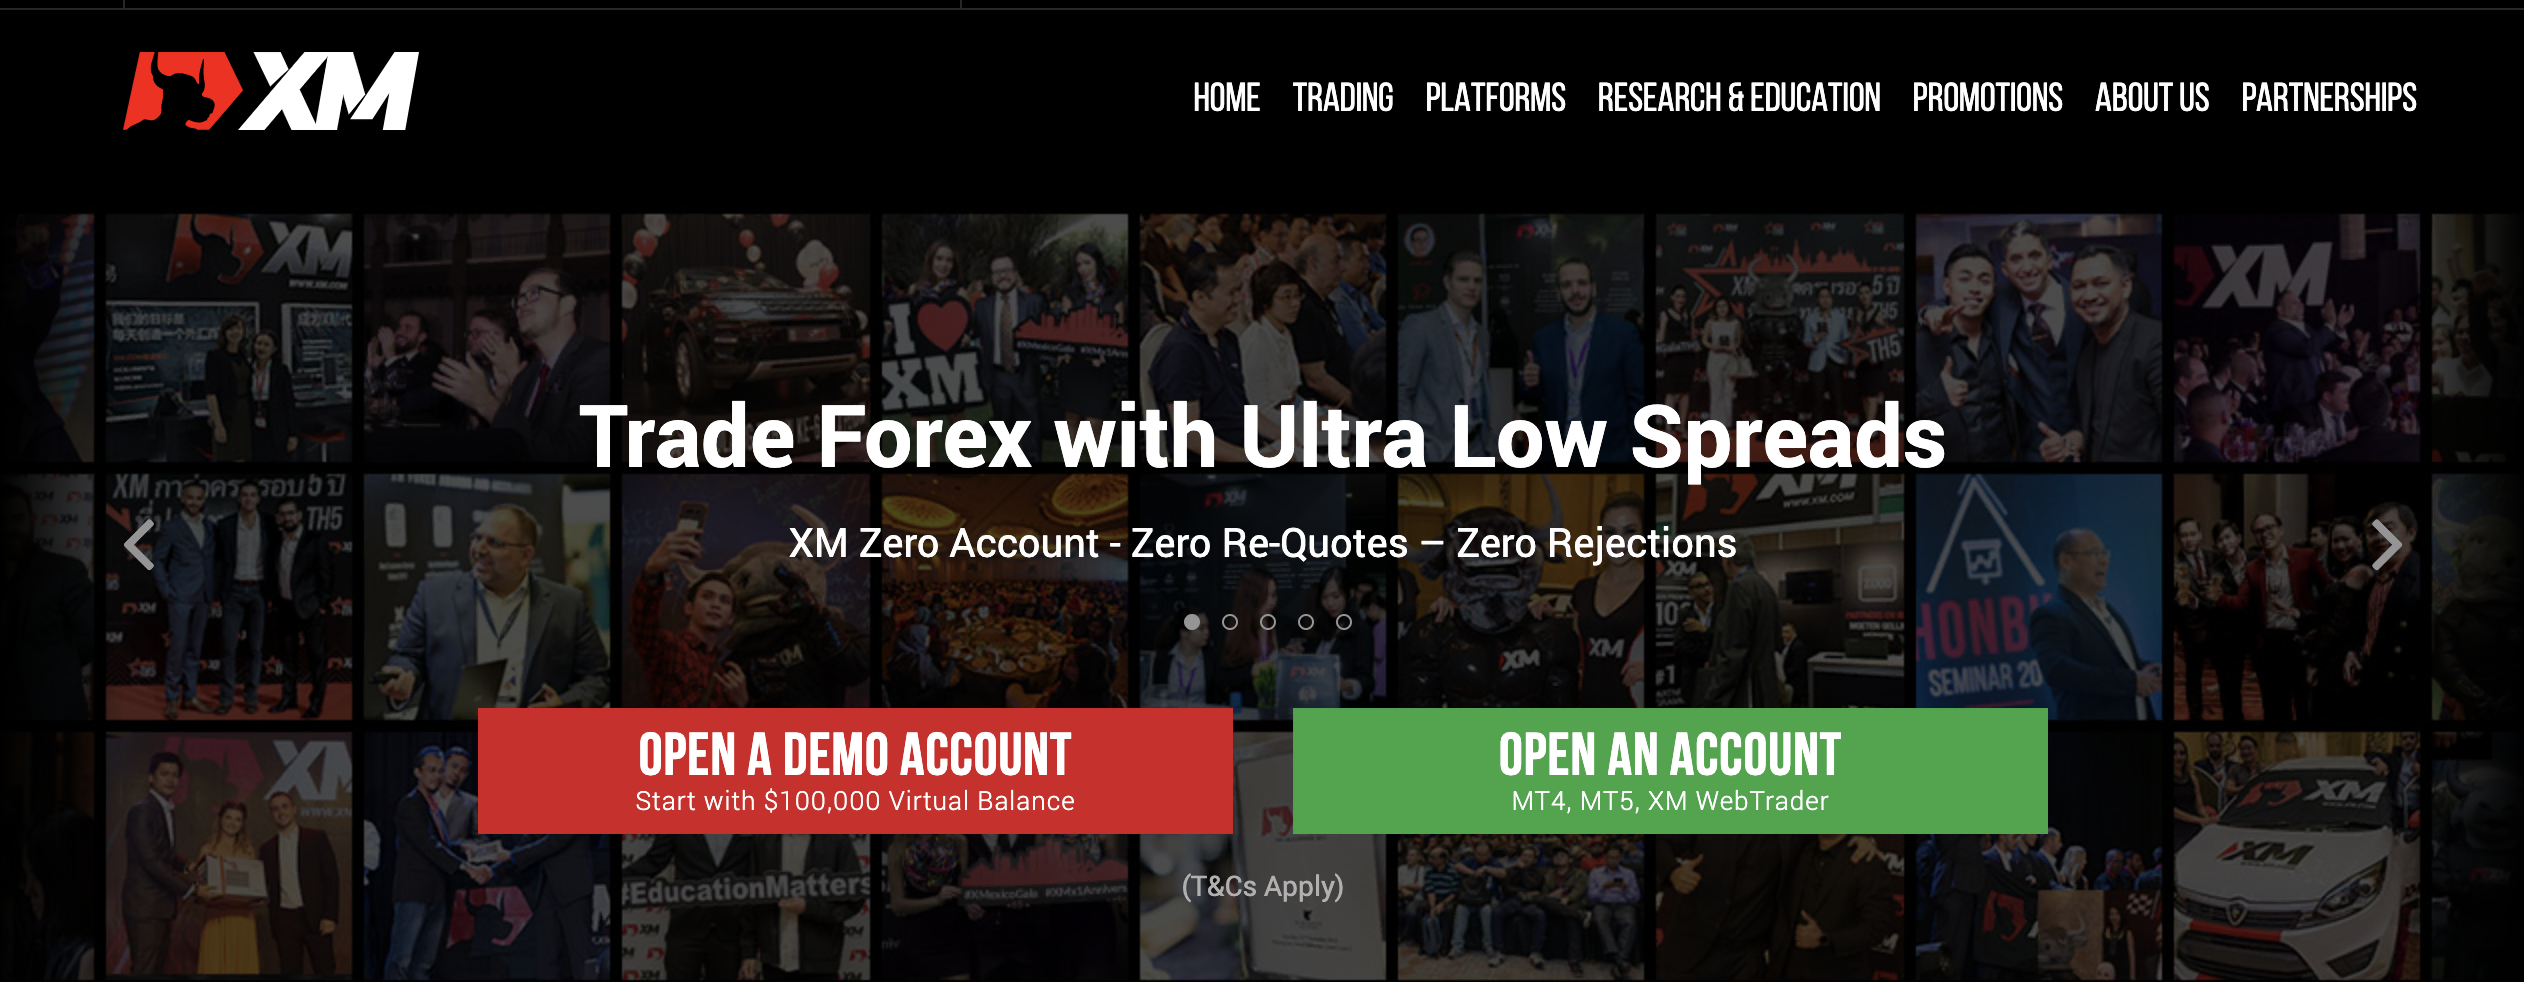 Den officielle hjemmeside for forex-mægleren XM handel